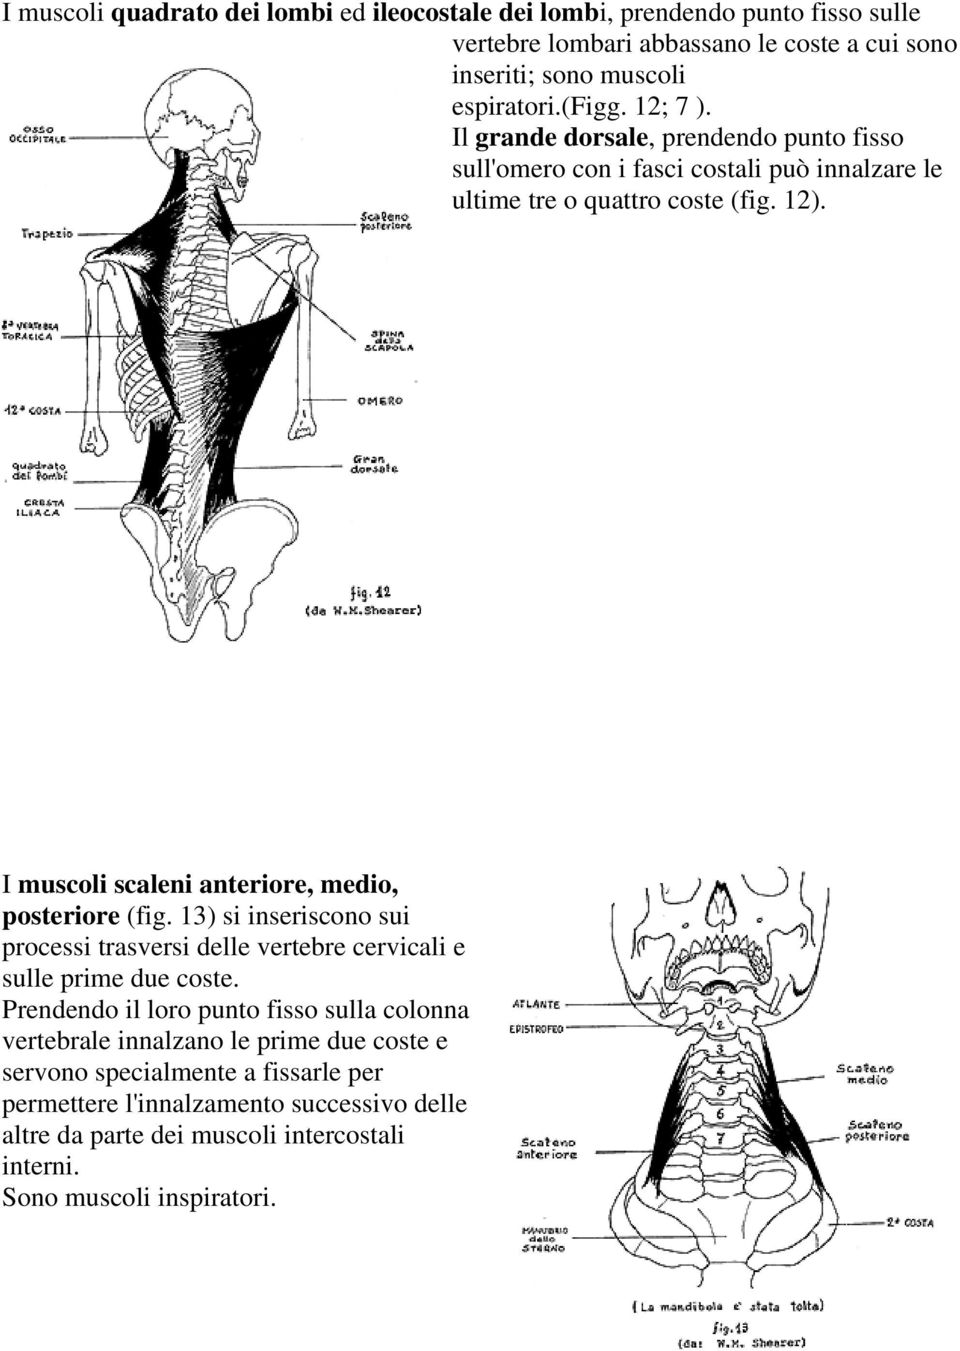 I muscoli scaleni anteriore, medio, posteriore (fig. 13) si inseriscono sui processi trasversi delle vertebre cervicali e sulle prime due coste.